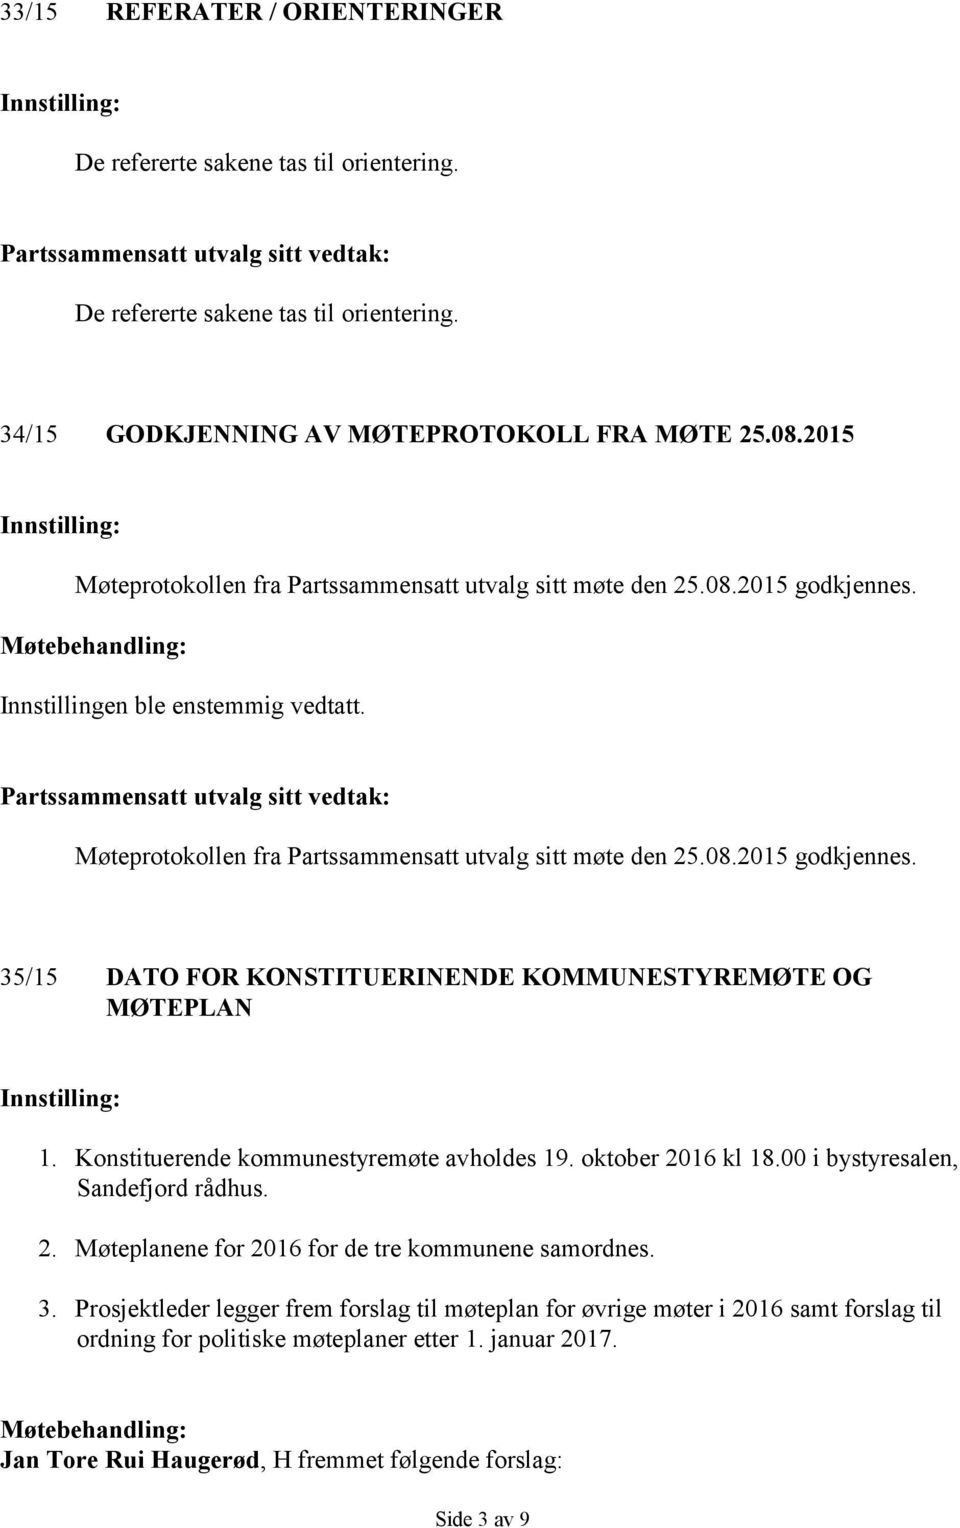 Konstituerende kommunestyremøte avholdes 19. oktober 2016 kl 18.00 i bystyresalen, Sandefjord rådhus. 2. Møteplanene for 2016 for de tre kommunene samordnes. 3.